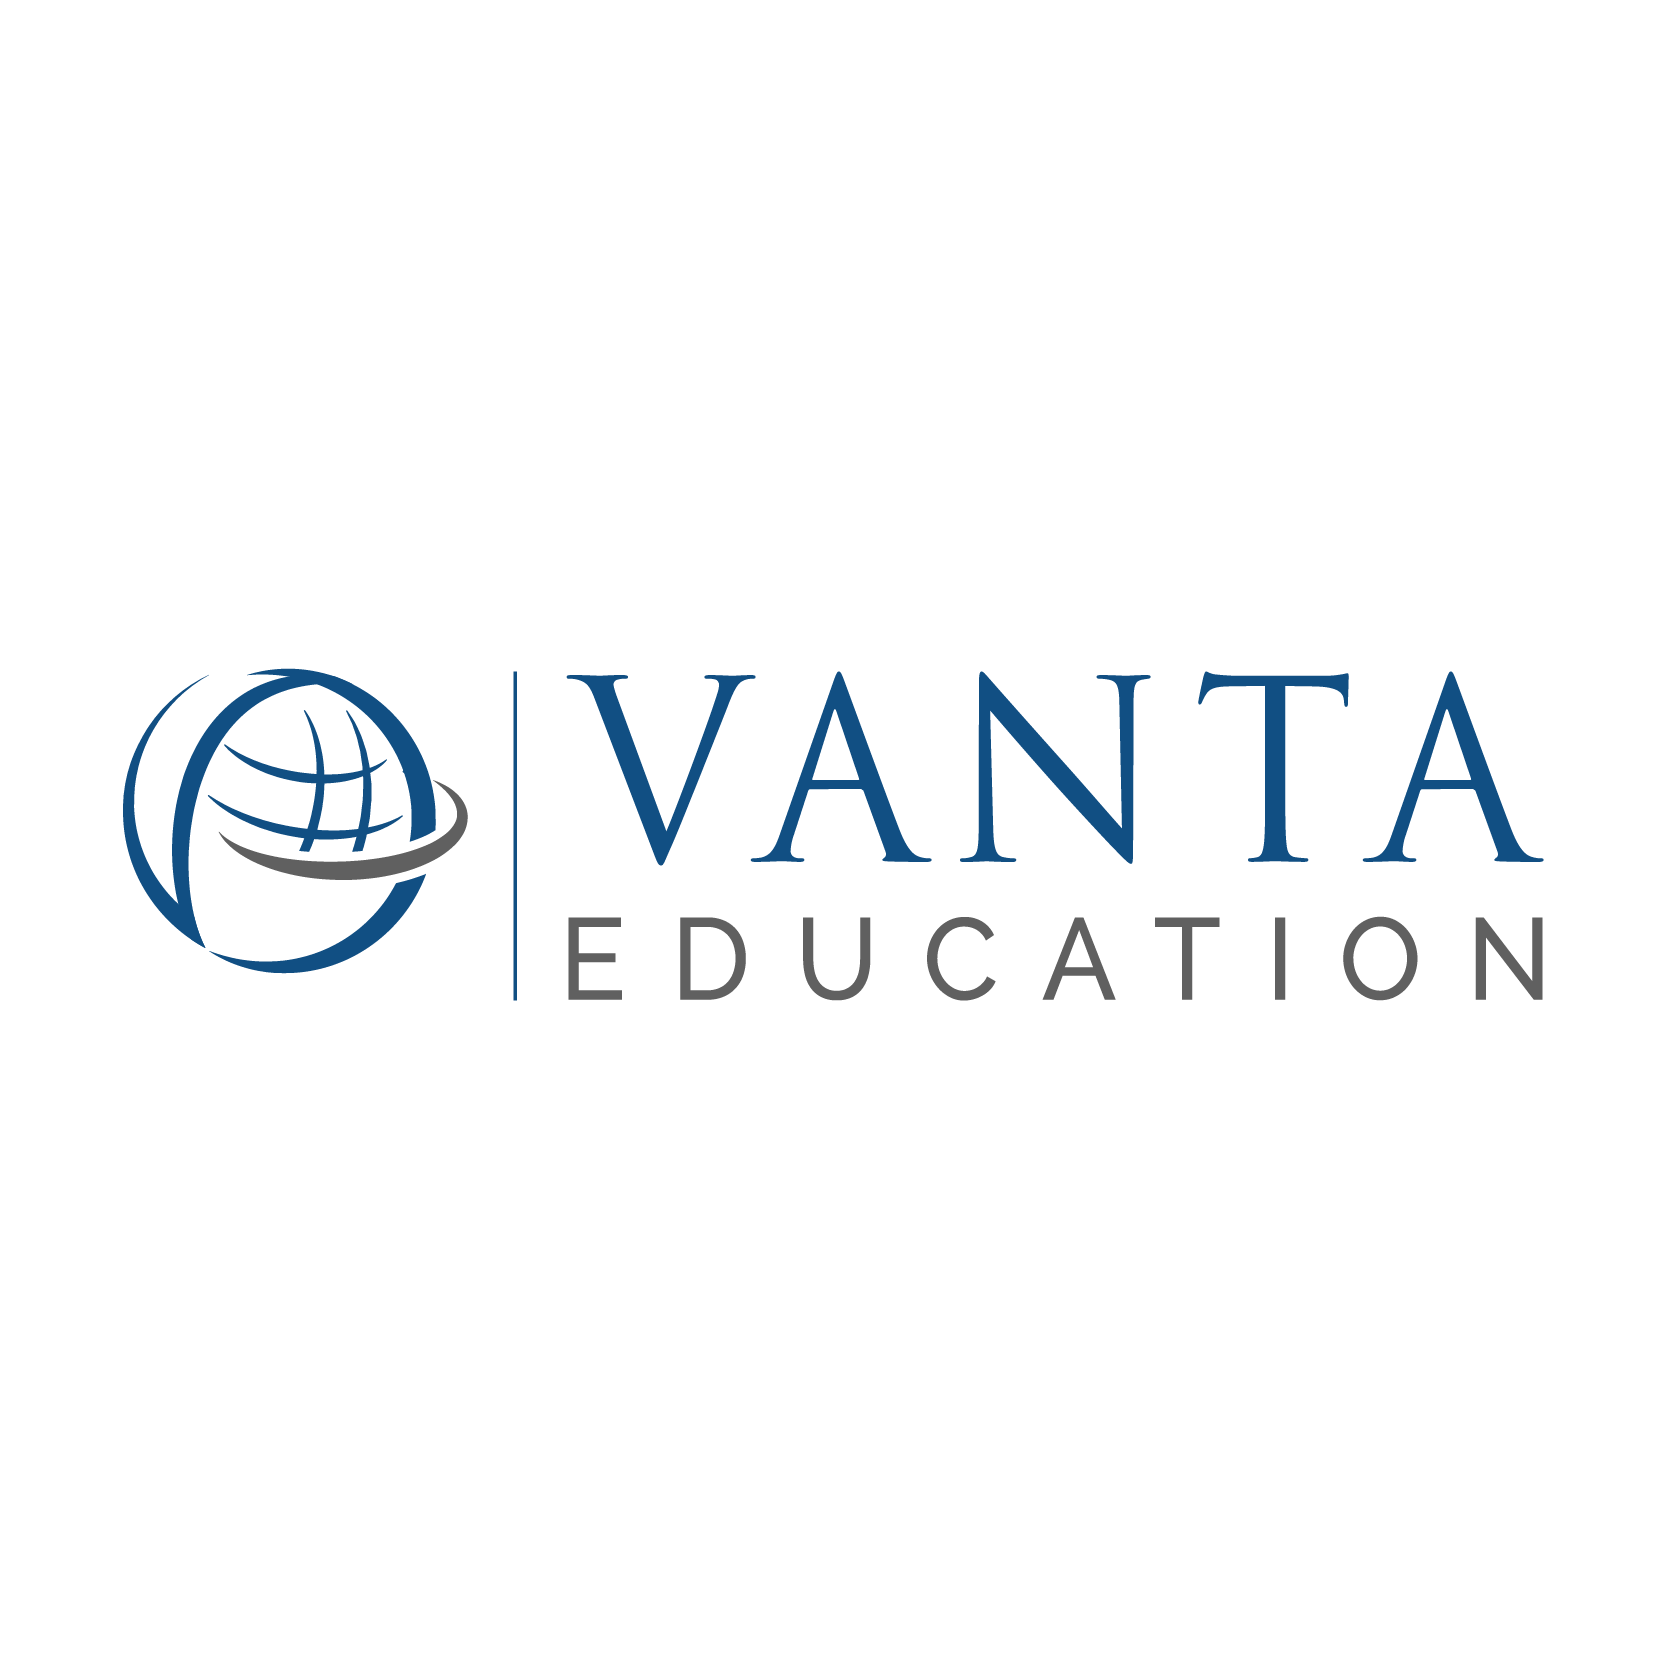 Vanta Education